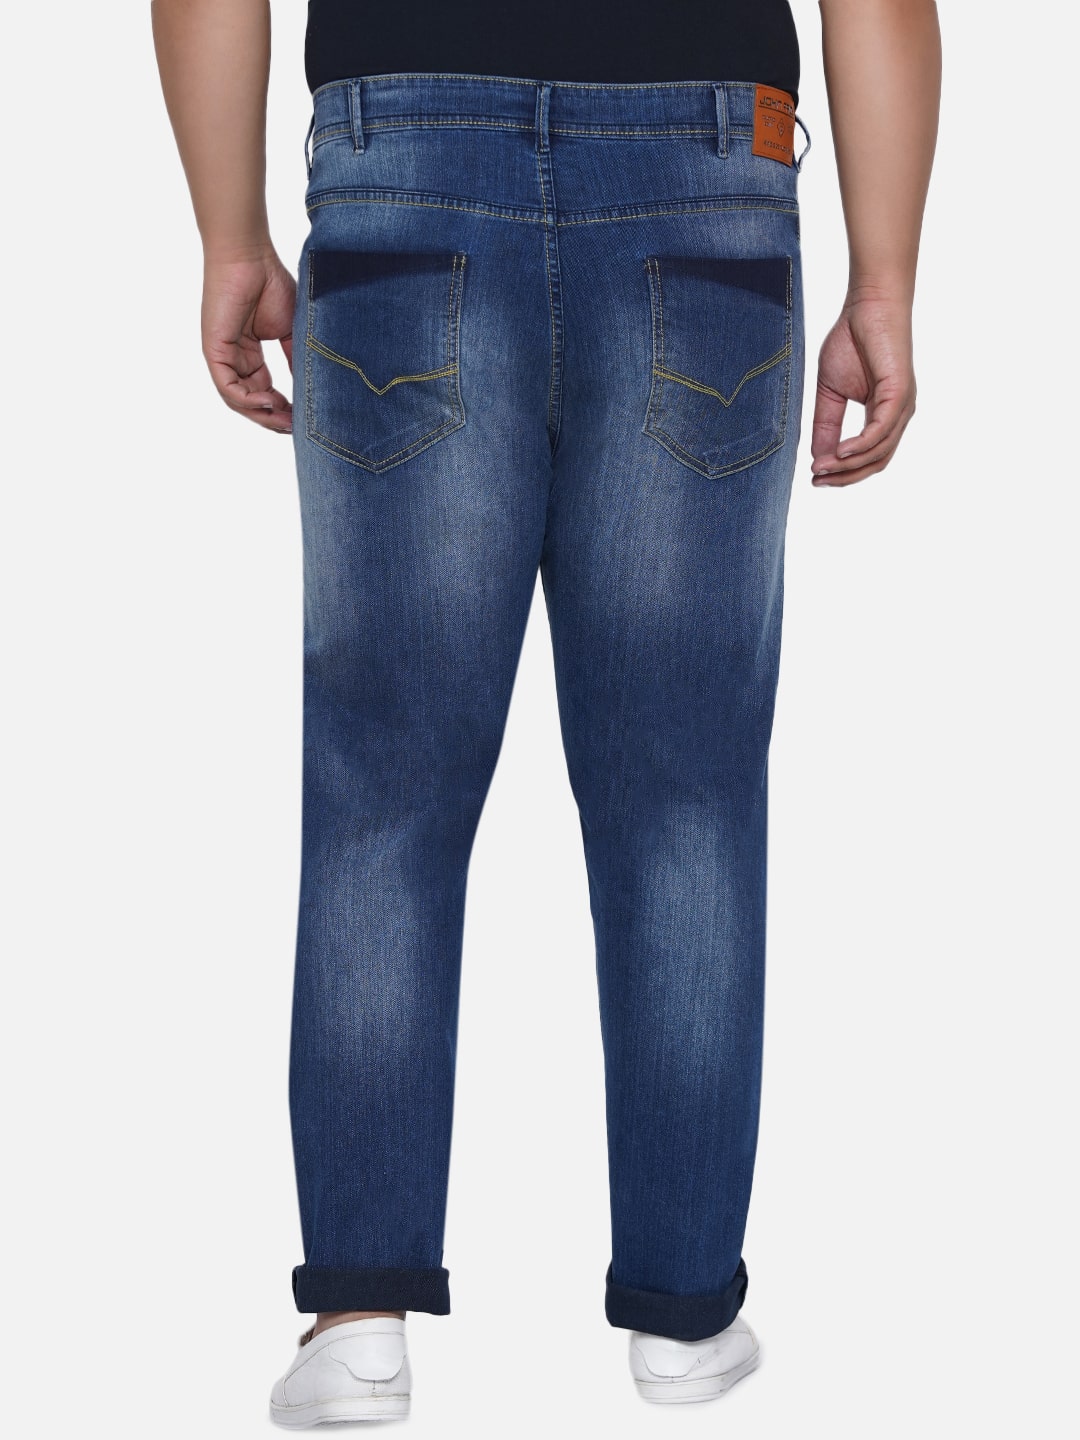 affordables/jeans/EJPJ2050/ejpj2050-6.jpg